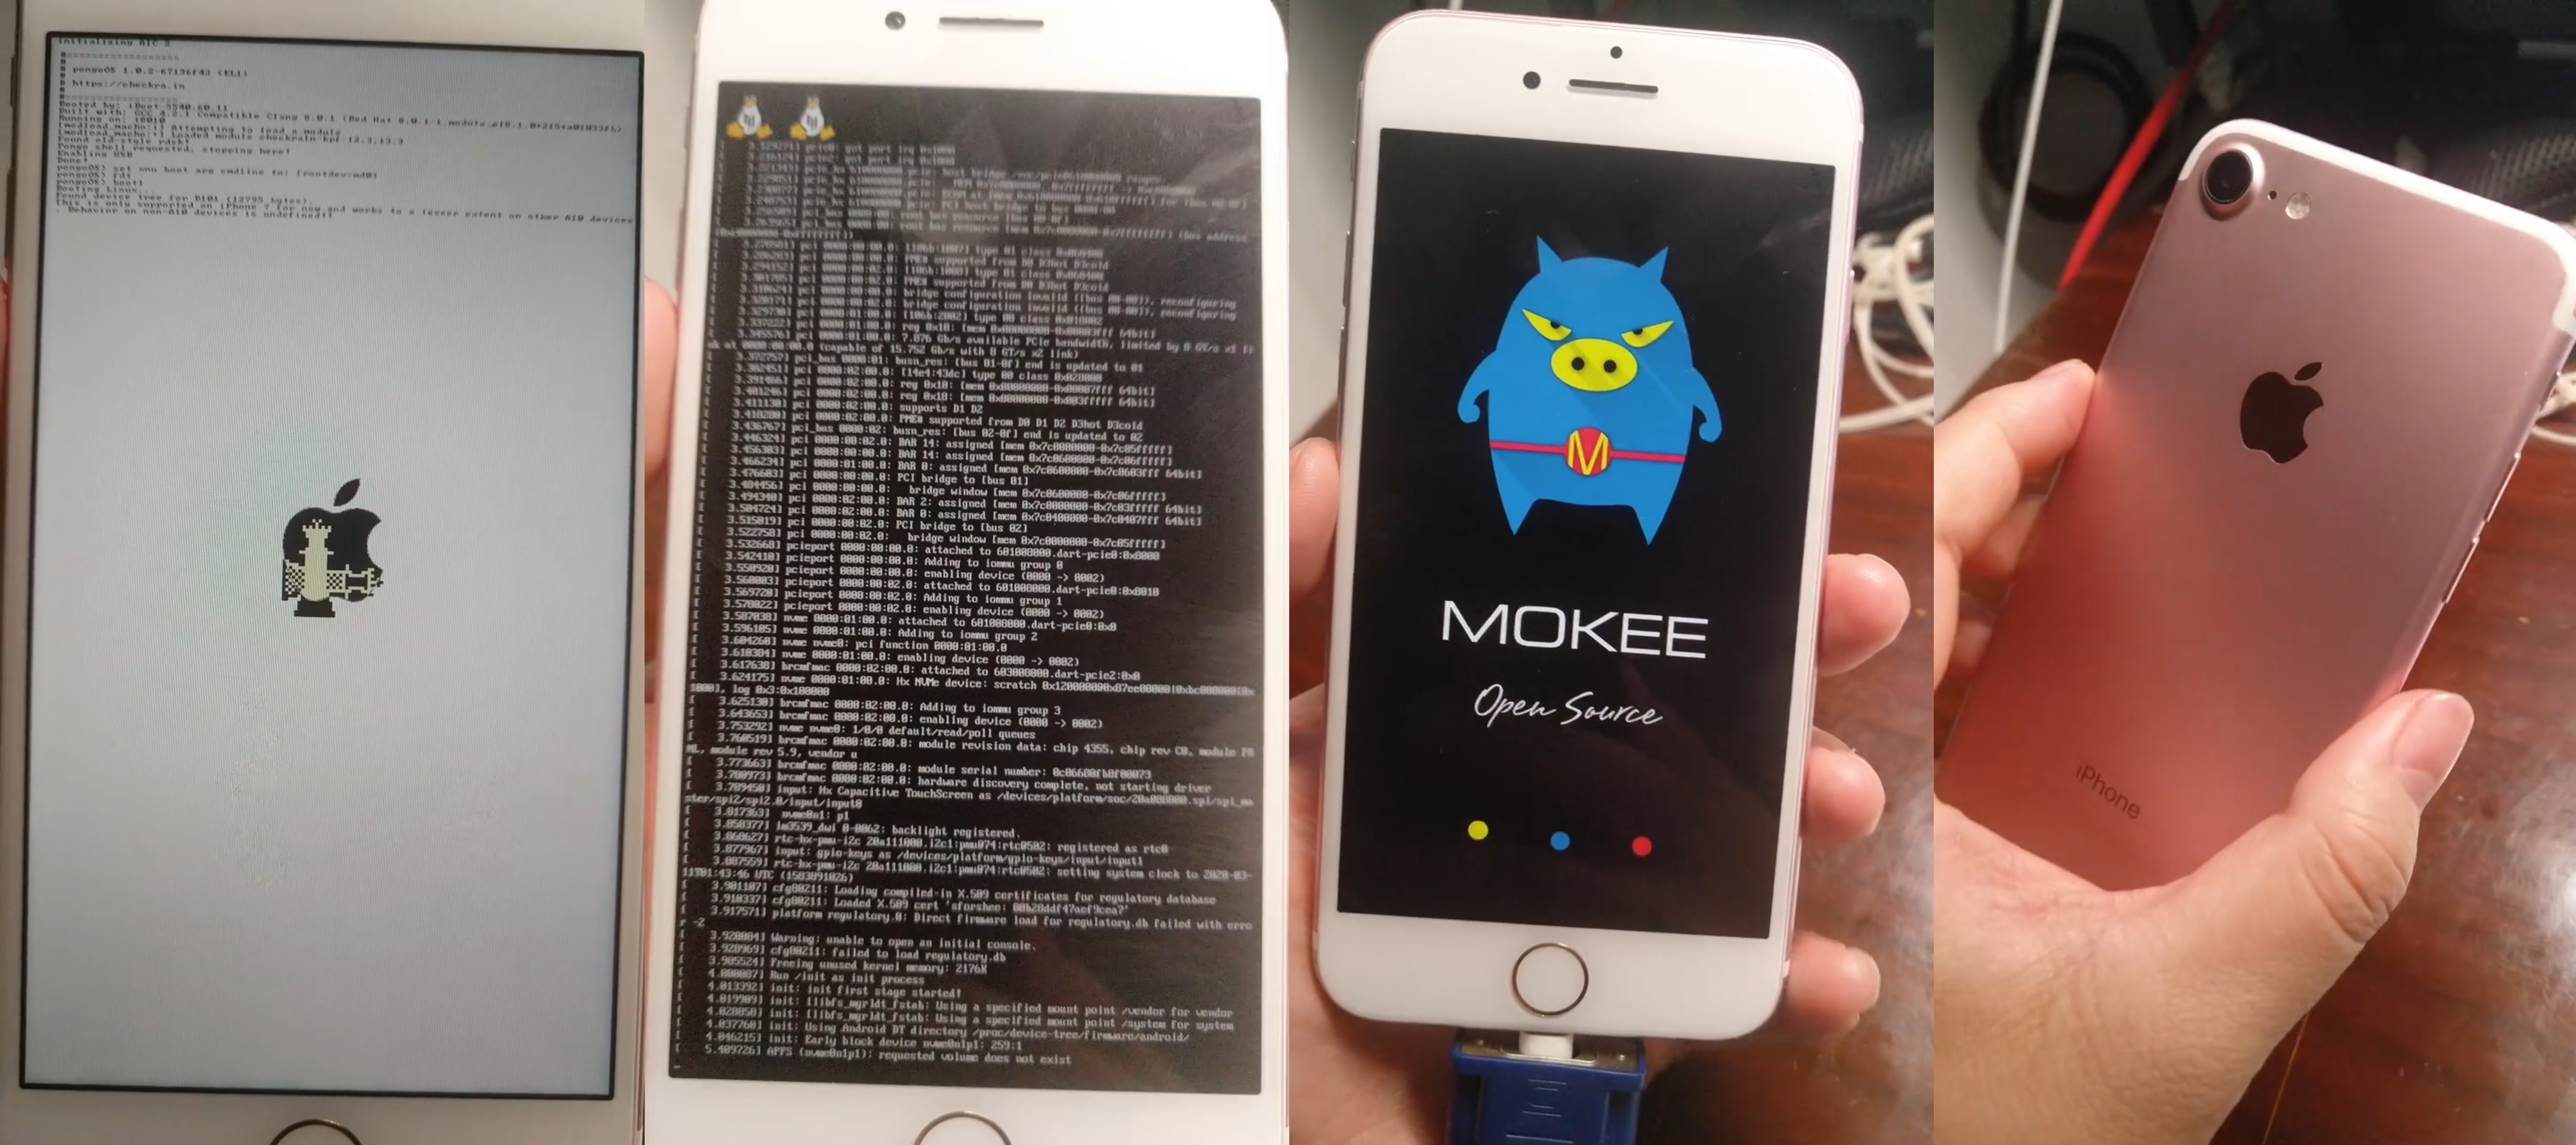 中国の開発者がApple iPhone 7にAOSPベースのMoKee ROMを導入テスト、起動まで成功